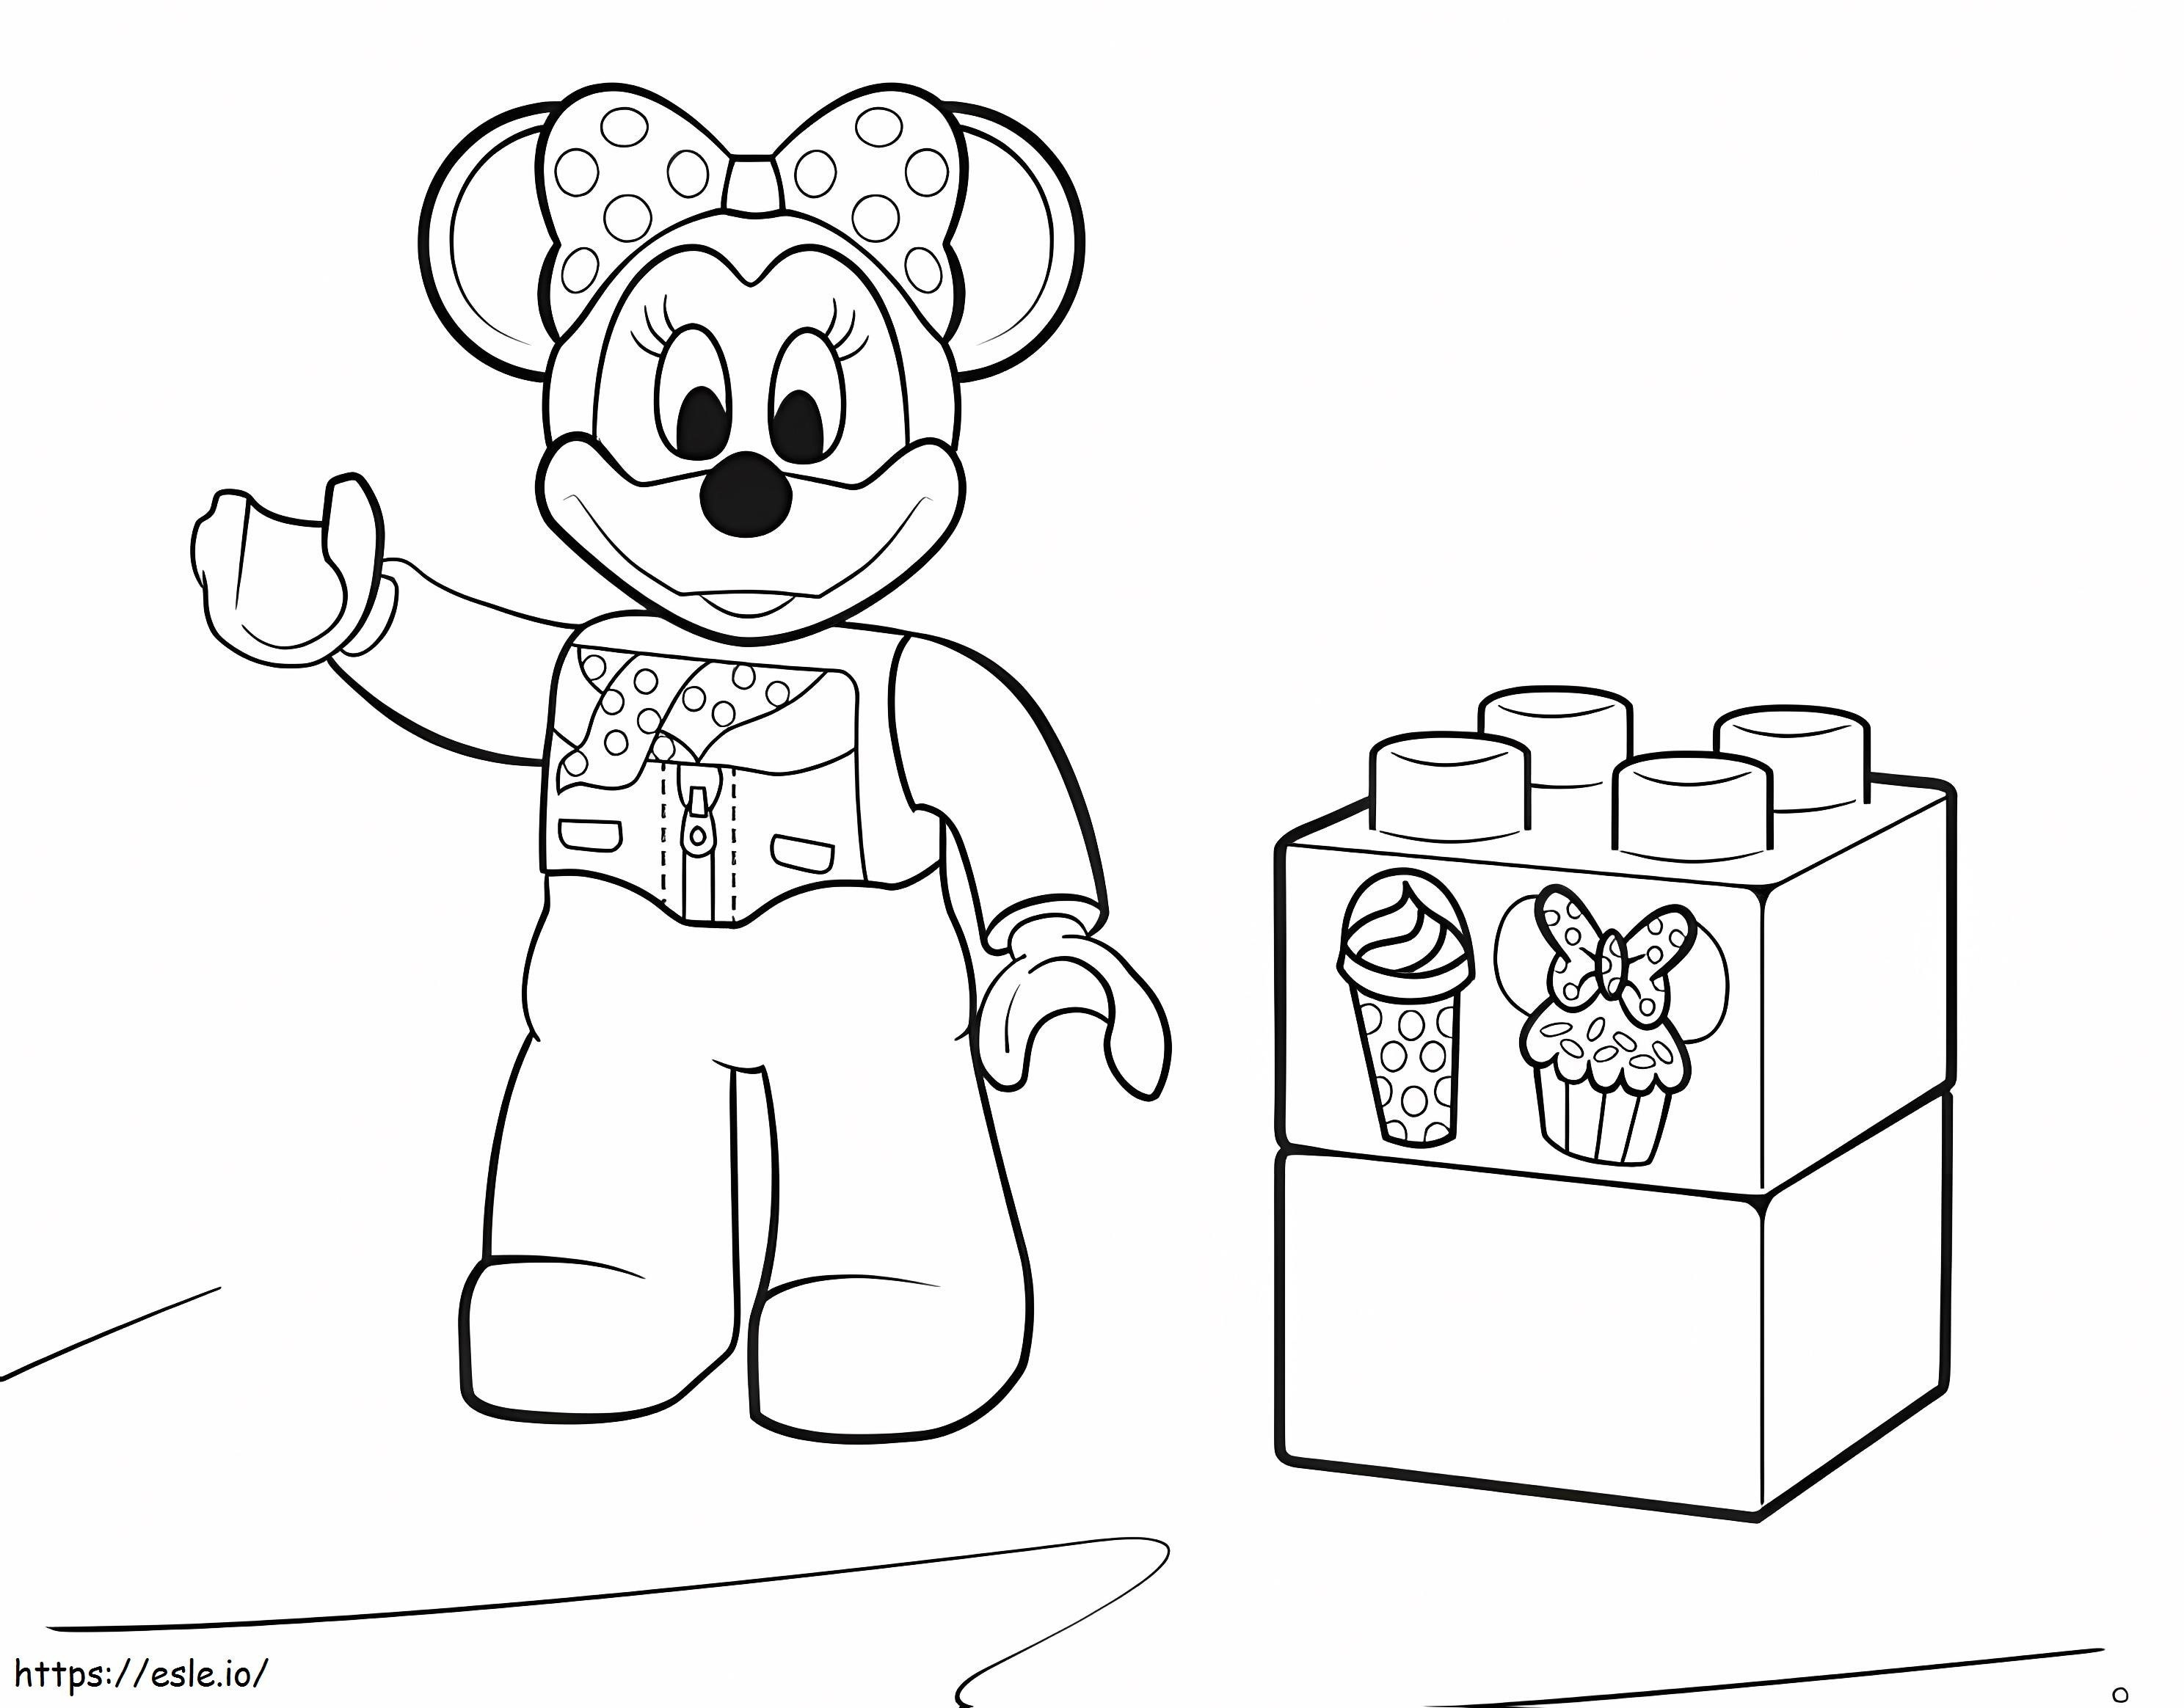 Minnie Mouse Lego Duplo da colorare